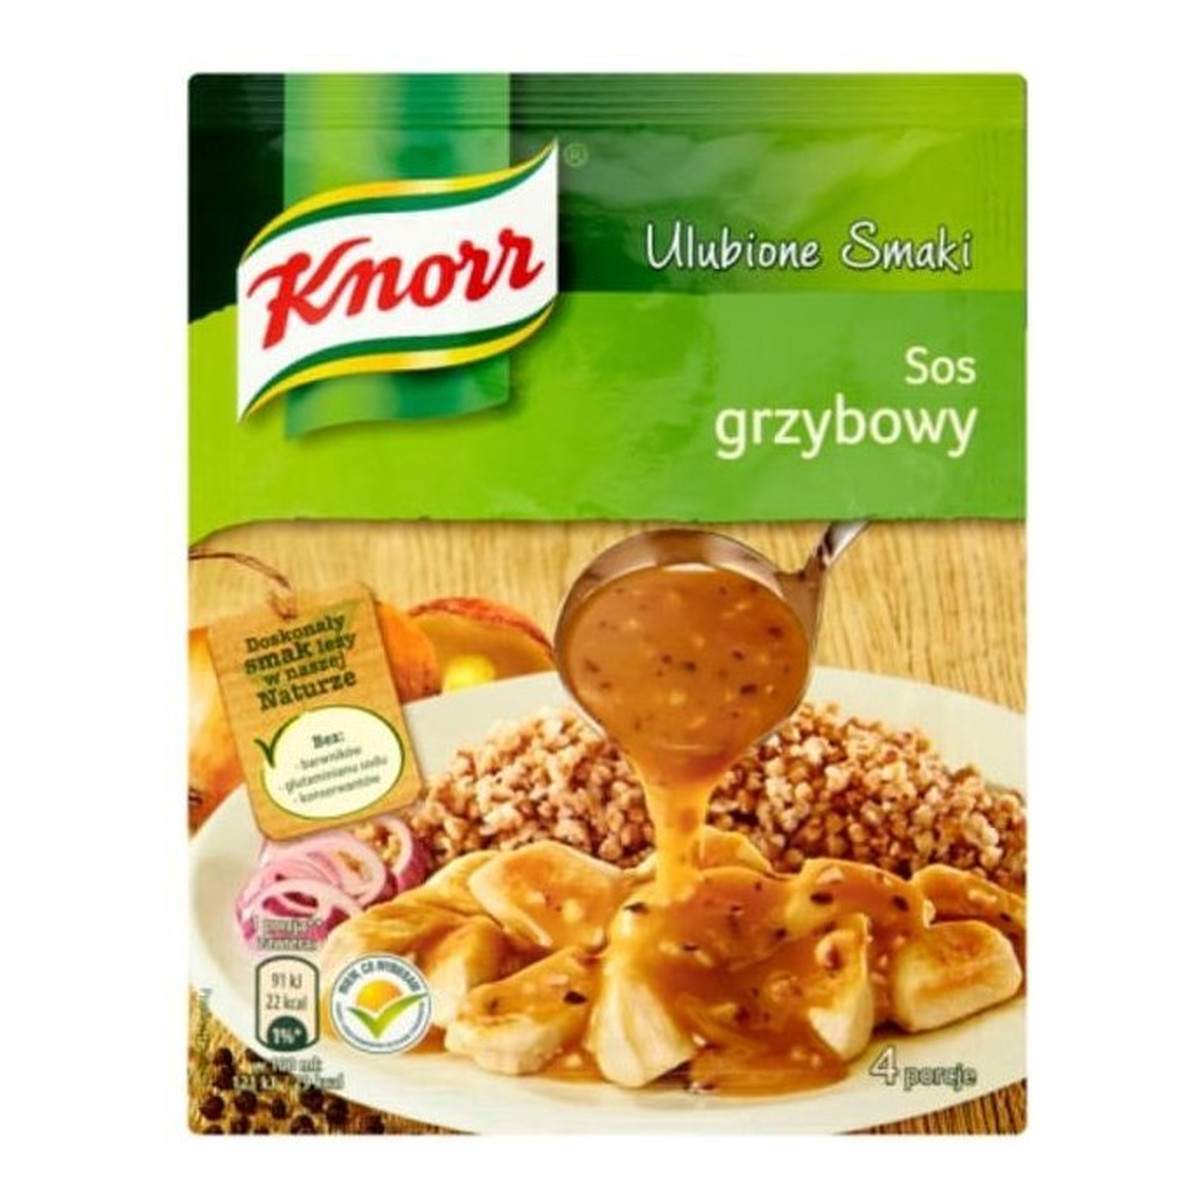 Knorr Ulubione Smaki sos grzybowy 24g